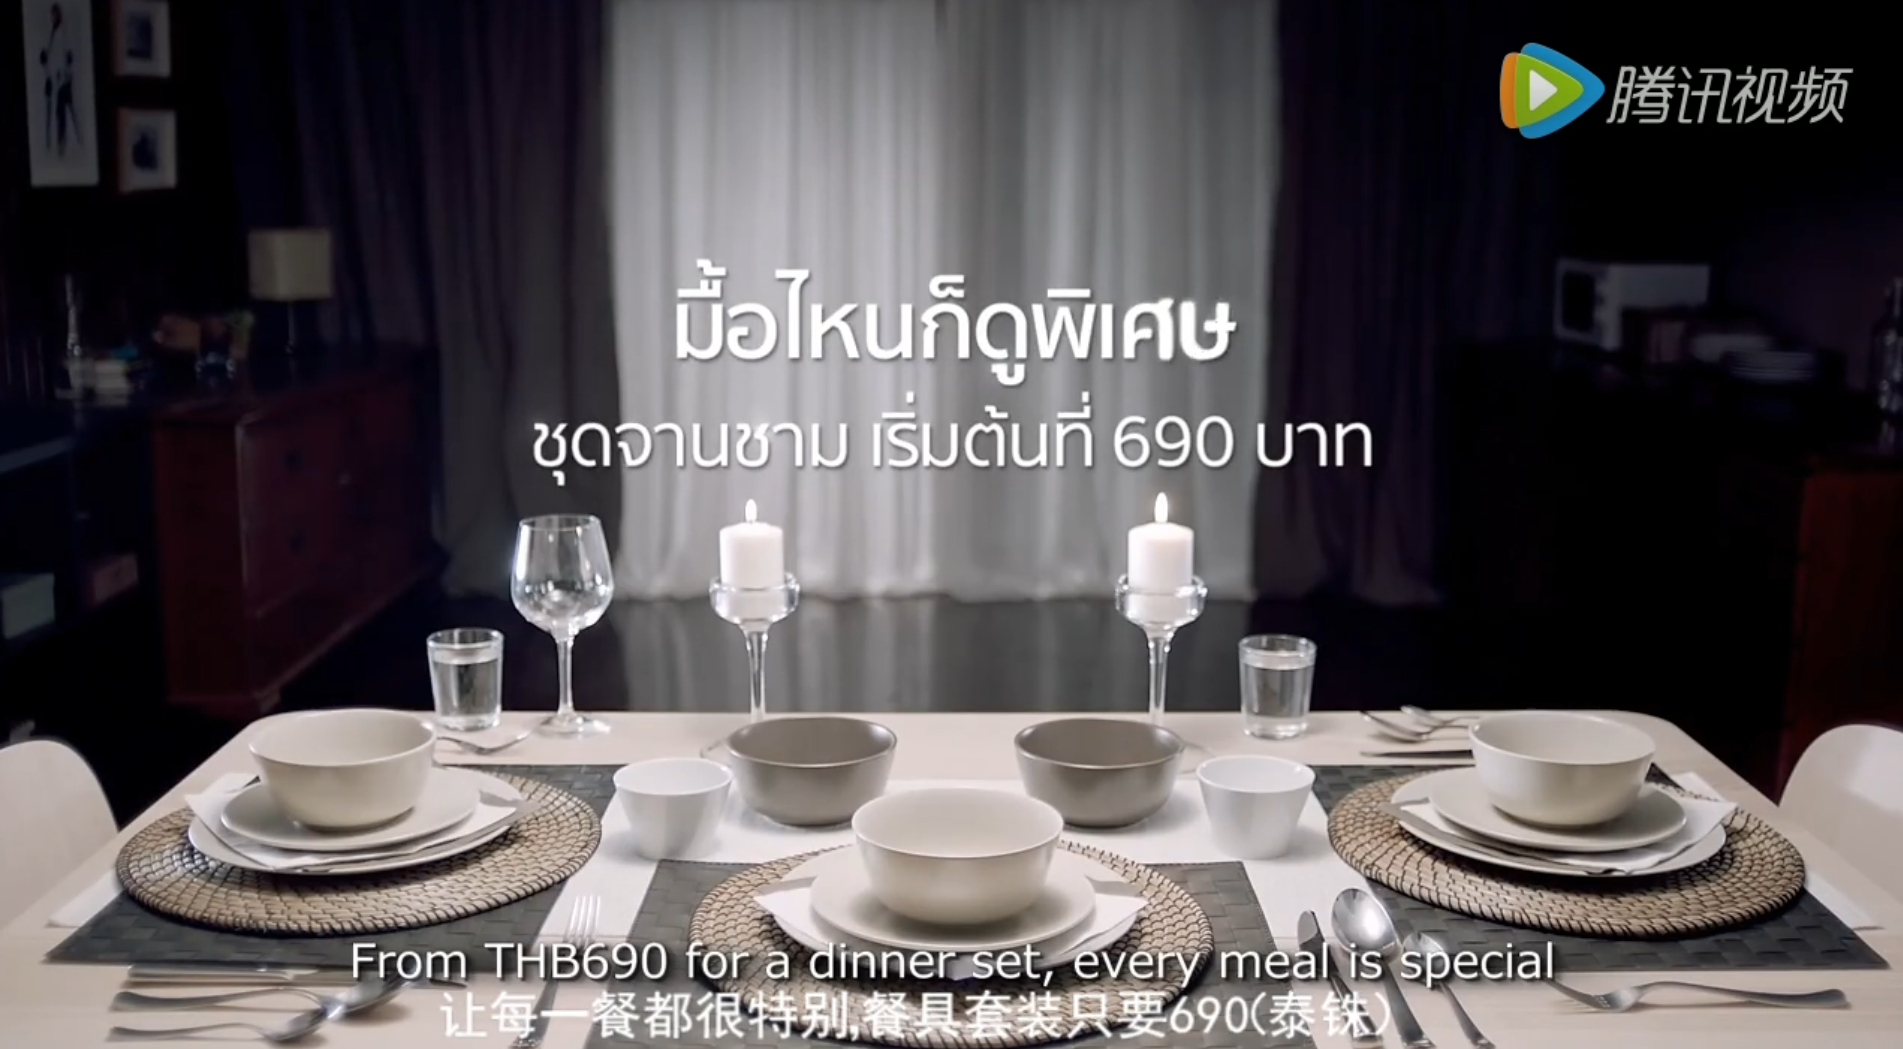 宜家泰国搞笑广告：你以为这是家庭伦理剧吗？